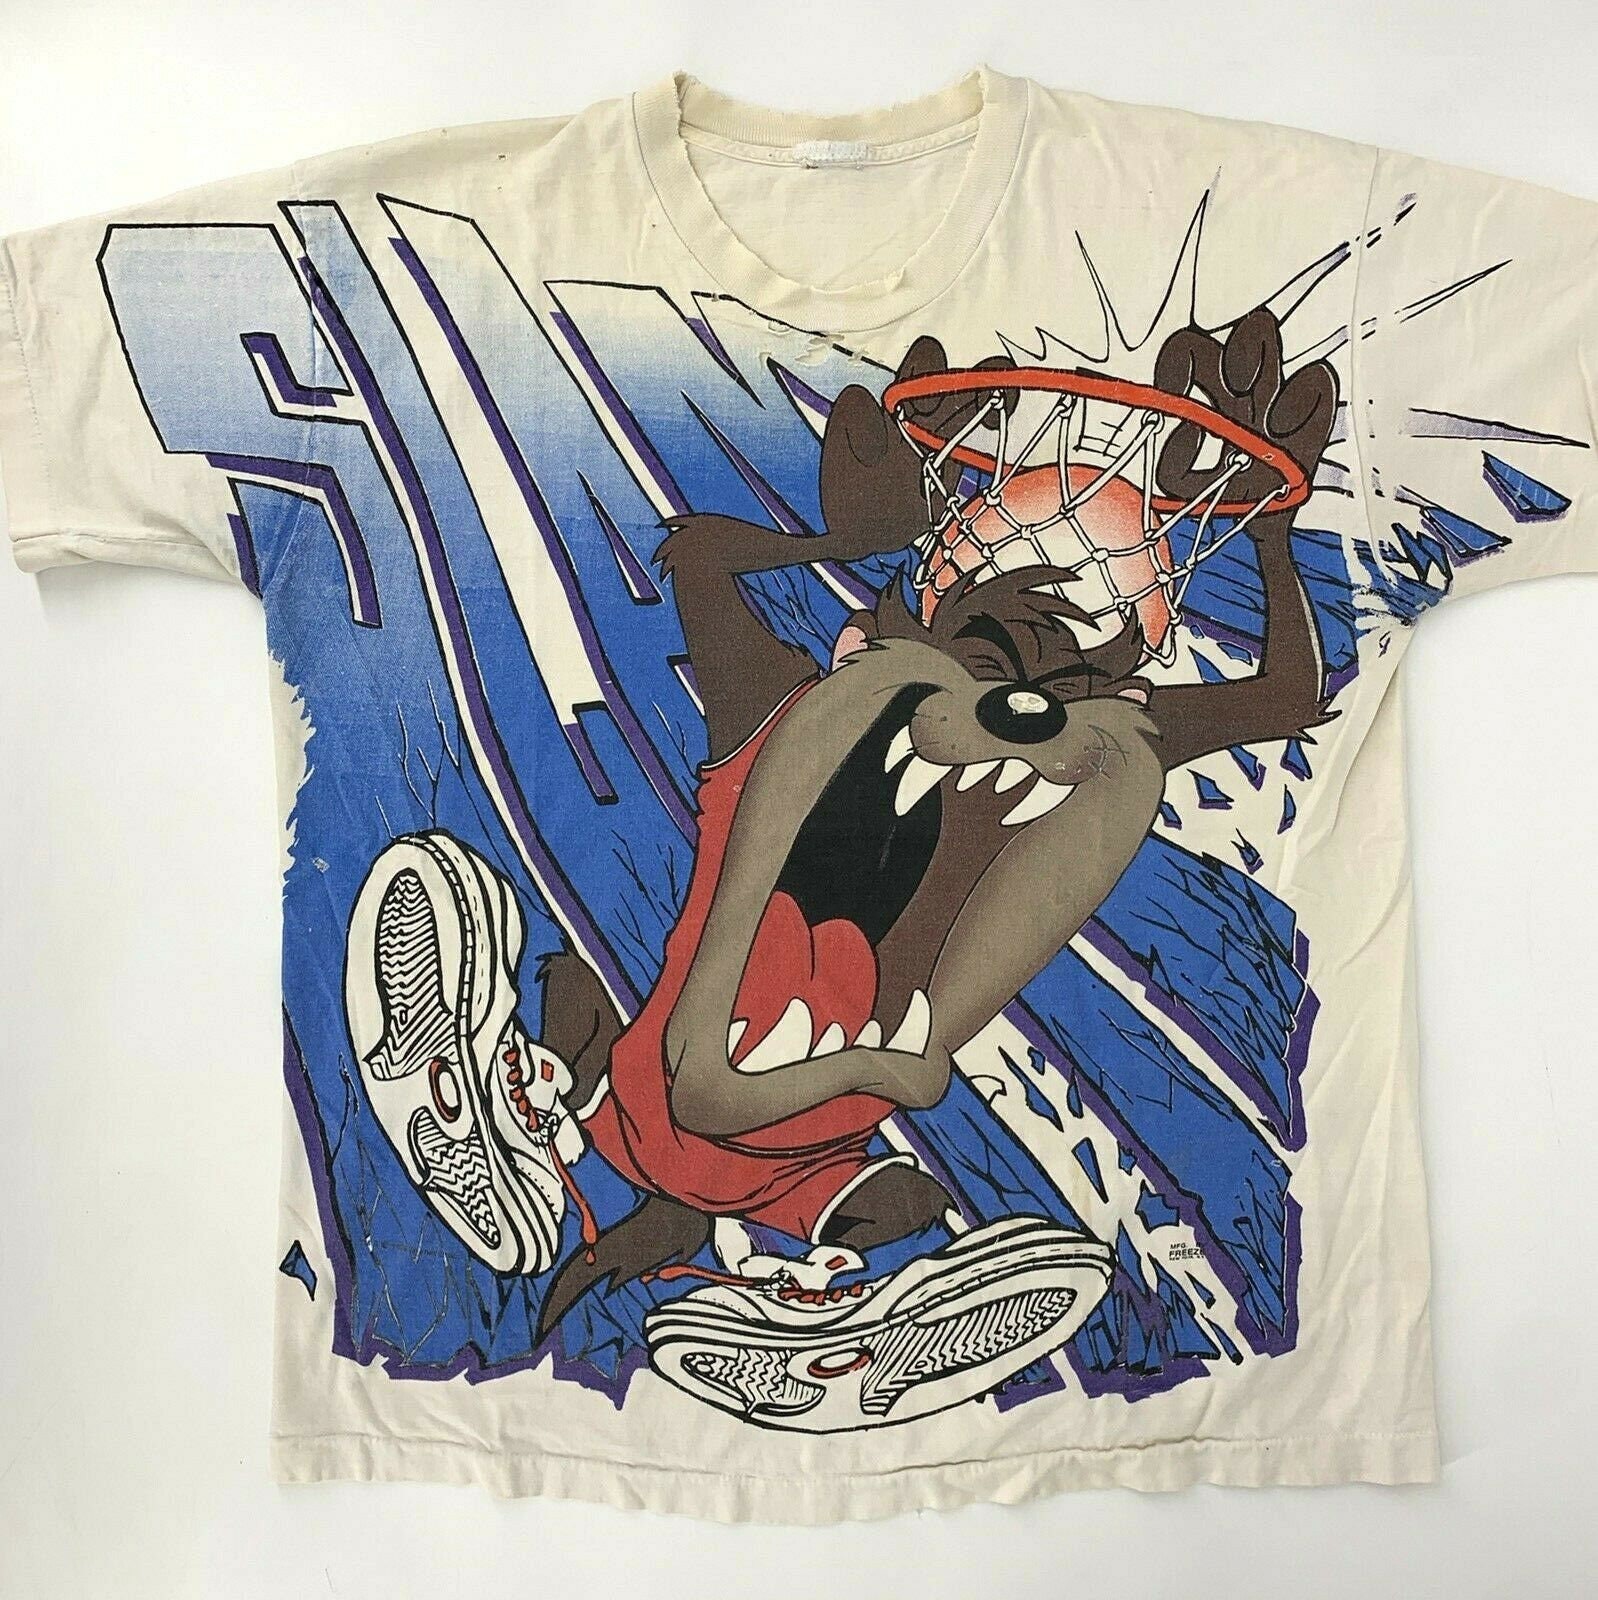 Vintage 1990's Phoenix Suns / TAZ Looney Tunes T-Shirt Sz. XL